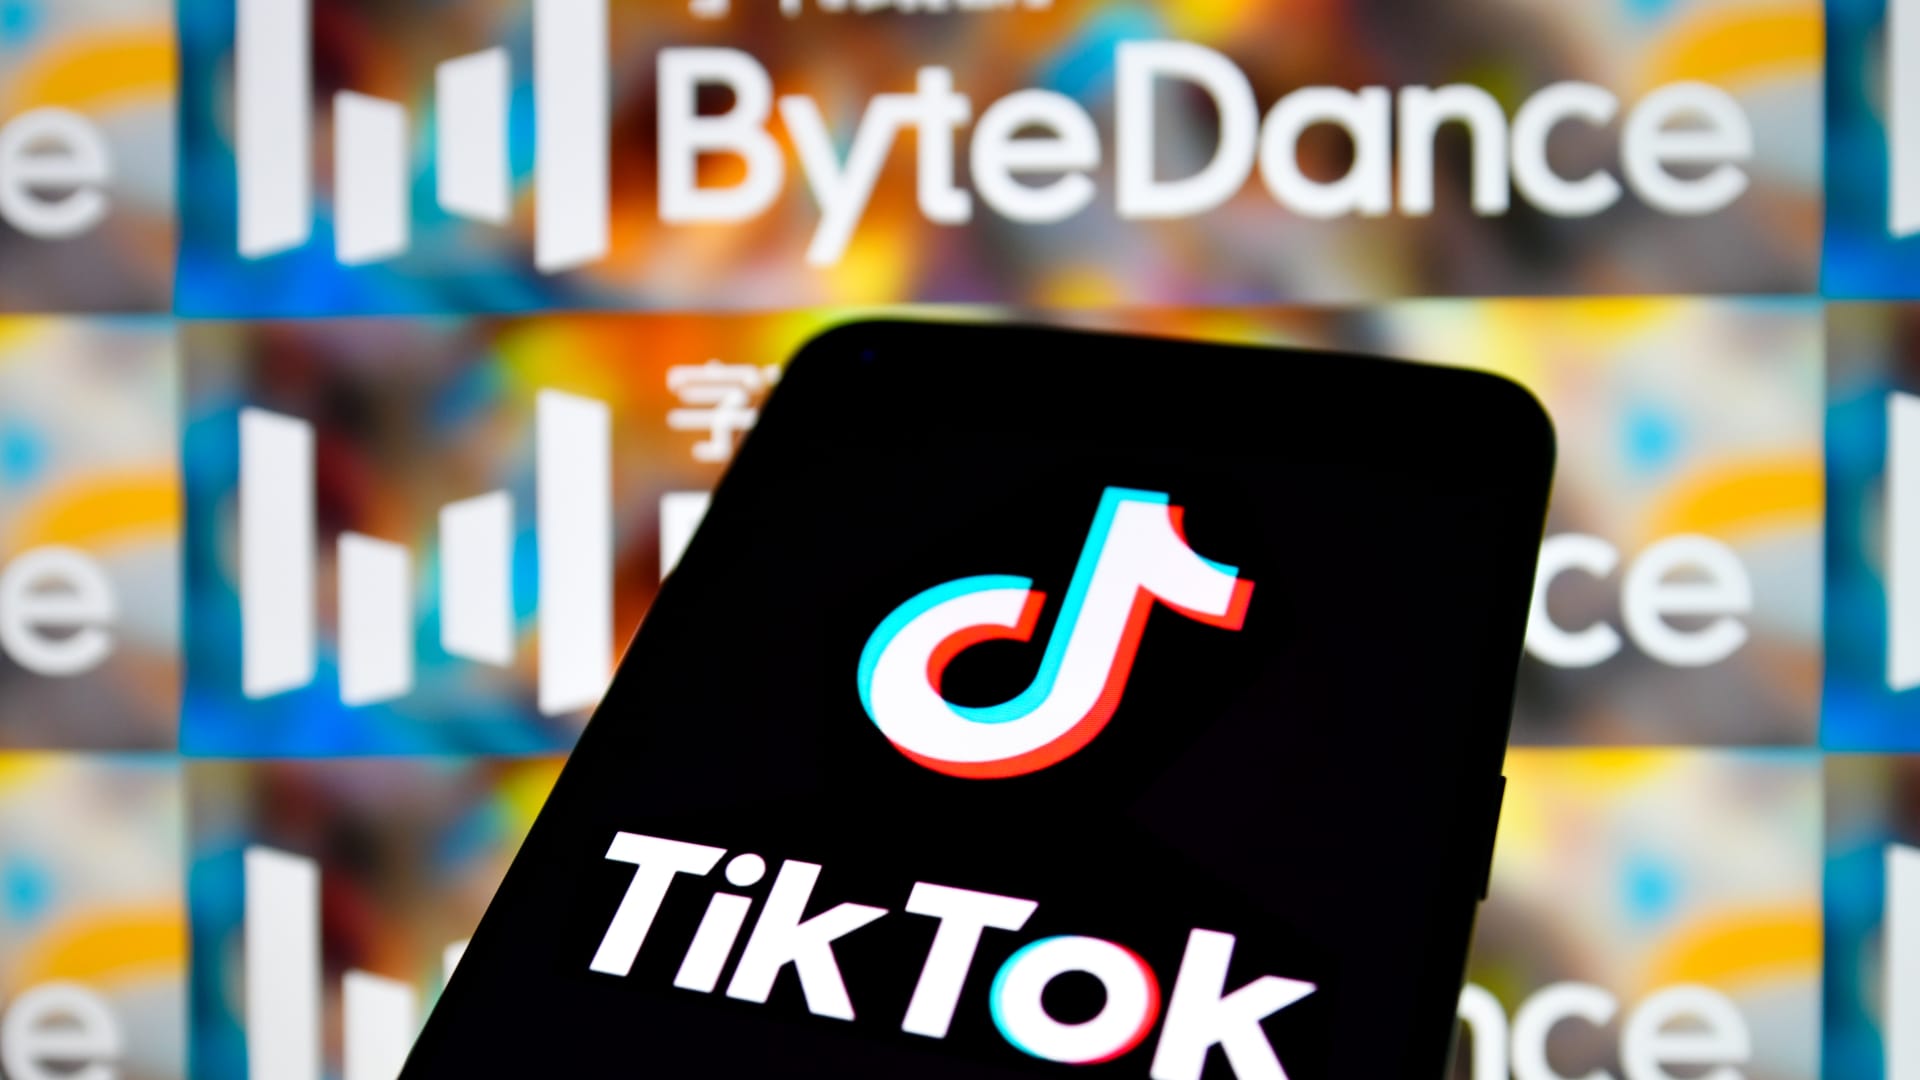 TikTok owner ByteDance axes hundreds of jobs in gaming unit